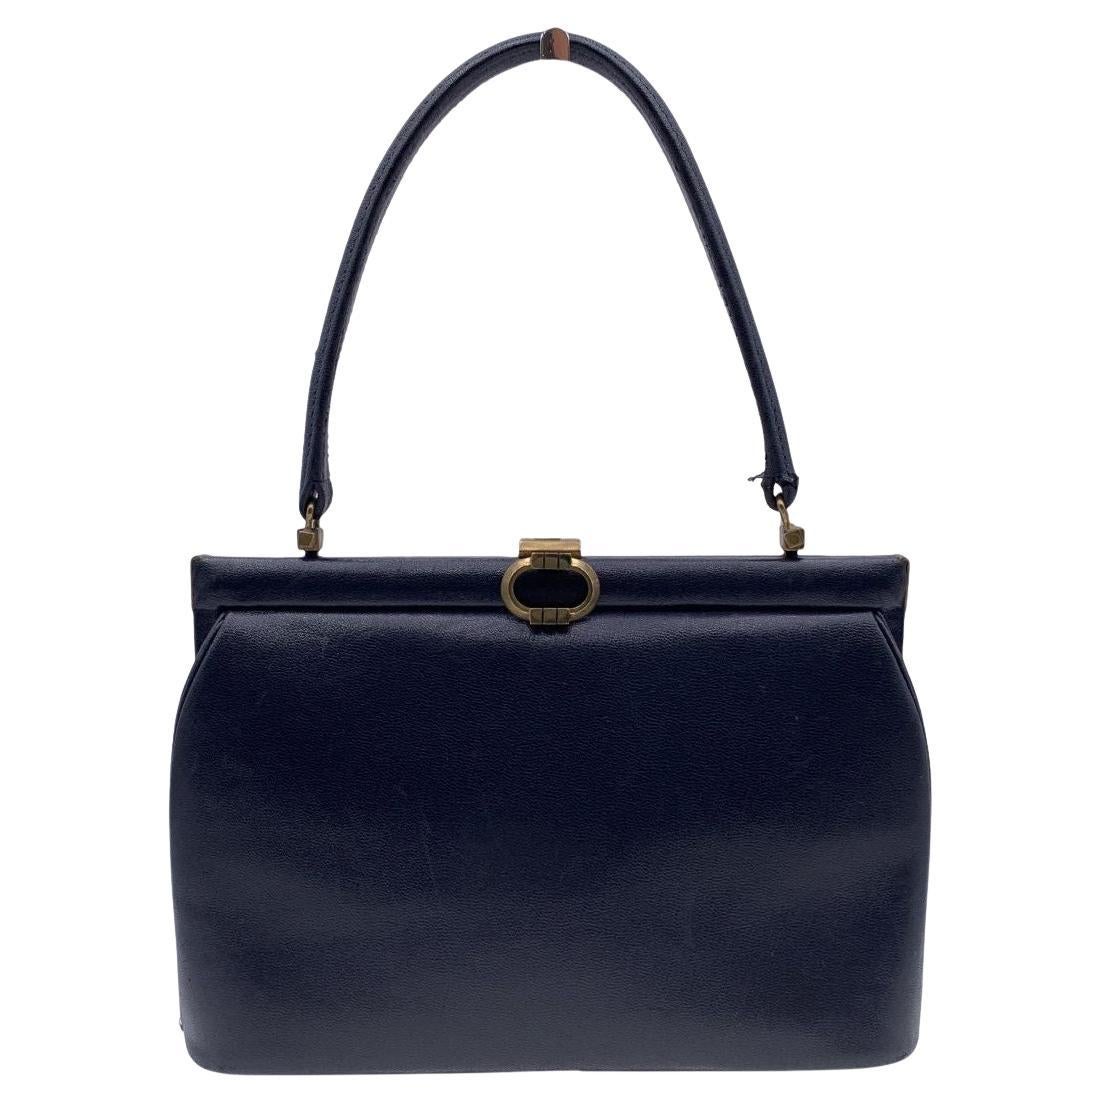 Gucci Vintage Navy Blue Leather Handbag Top Handle Framed Bag